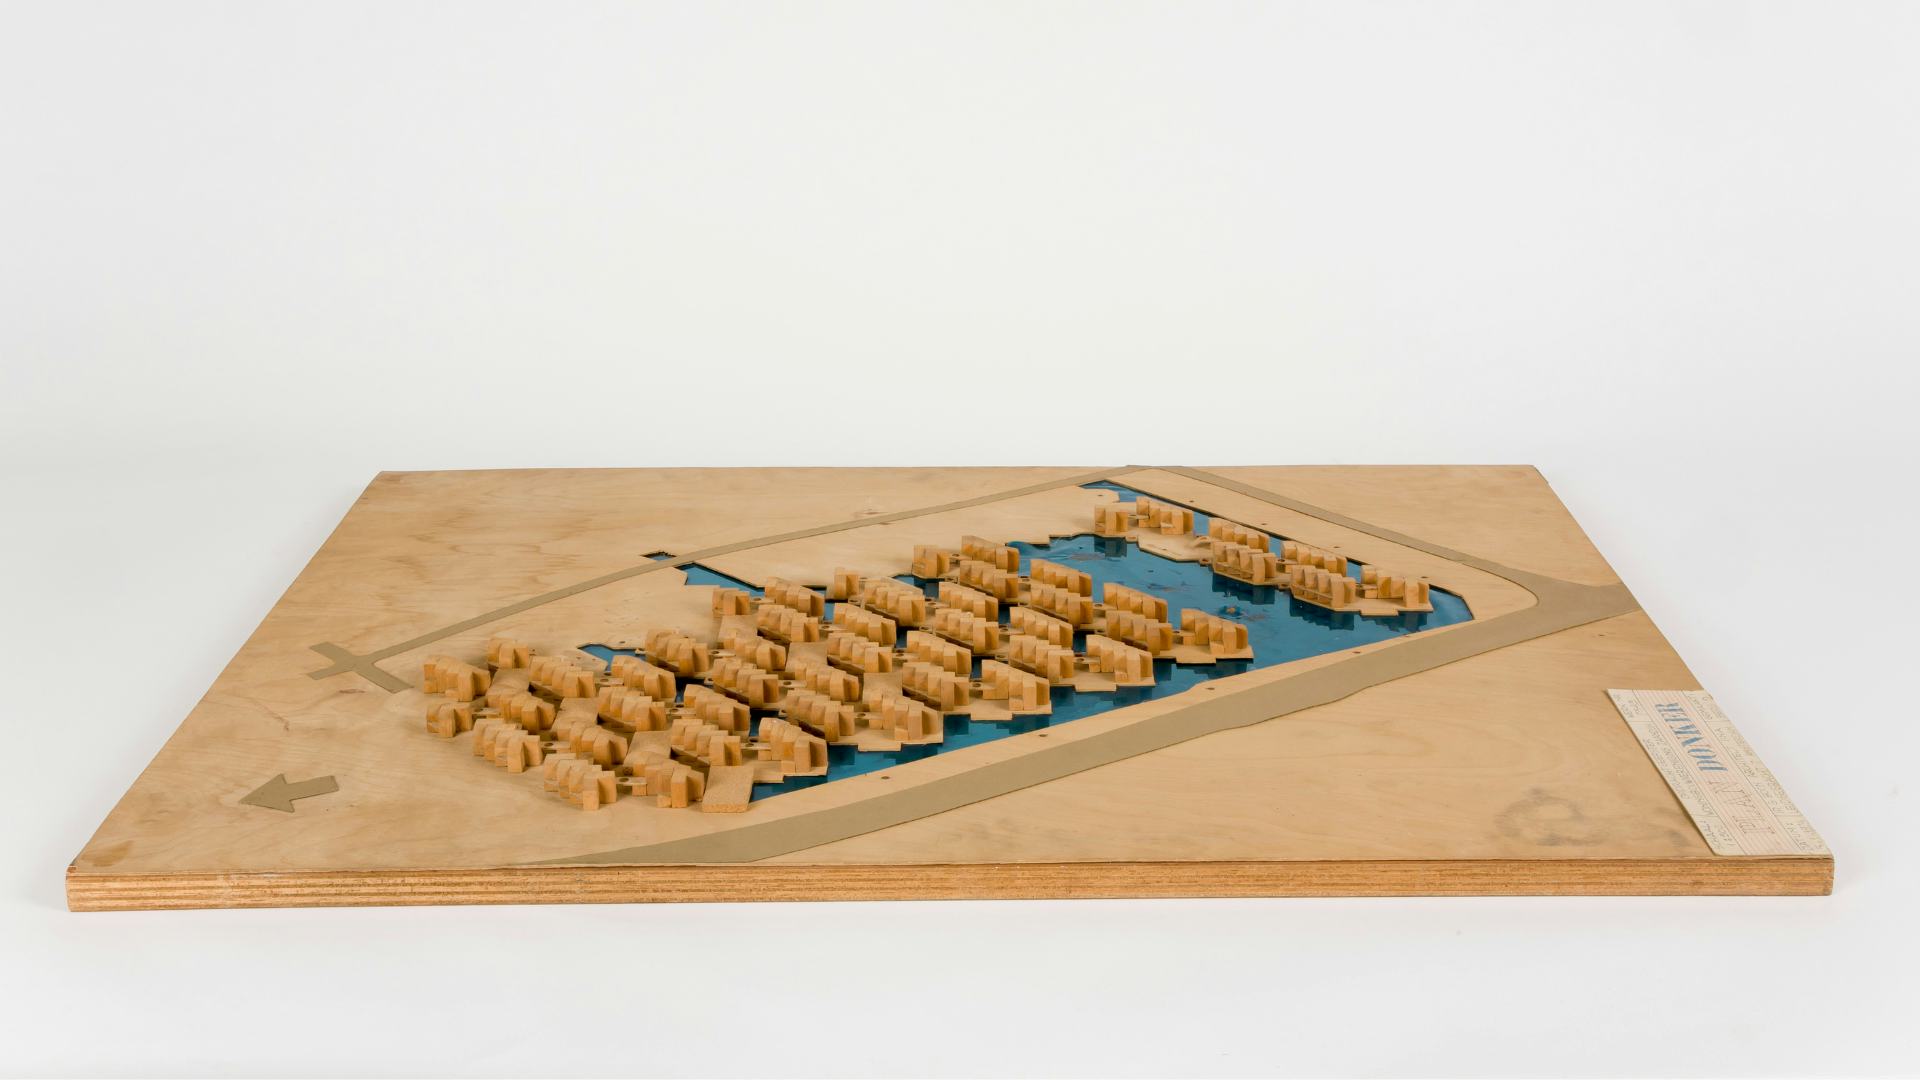 Maquette van Plan Donker door Gert Boon. Zijn geometrische vormentaal en de eilandstructuur zijn duidelijk zichtbaar. Beeld Collectie Nieuwe Instituut MAQV 63-e